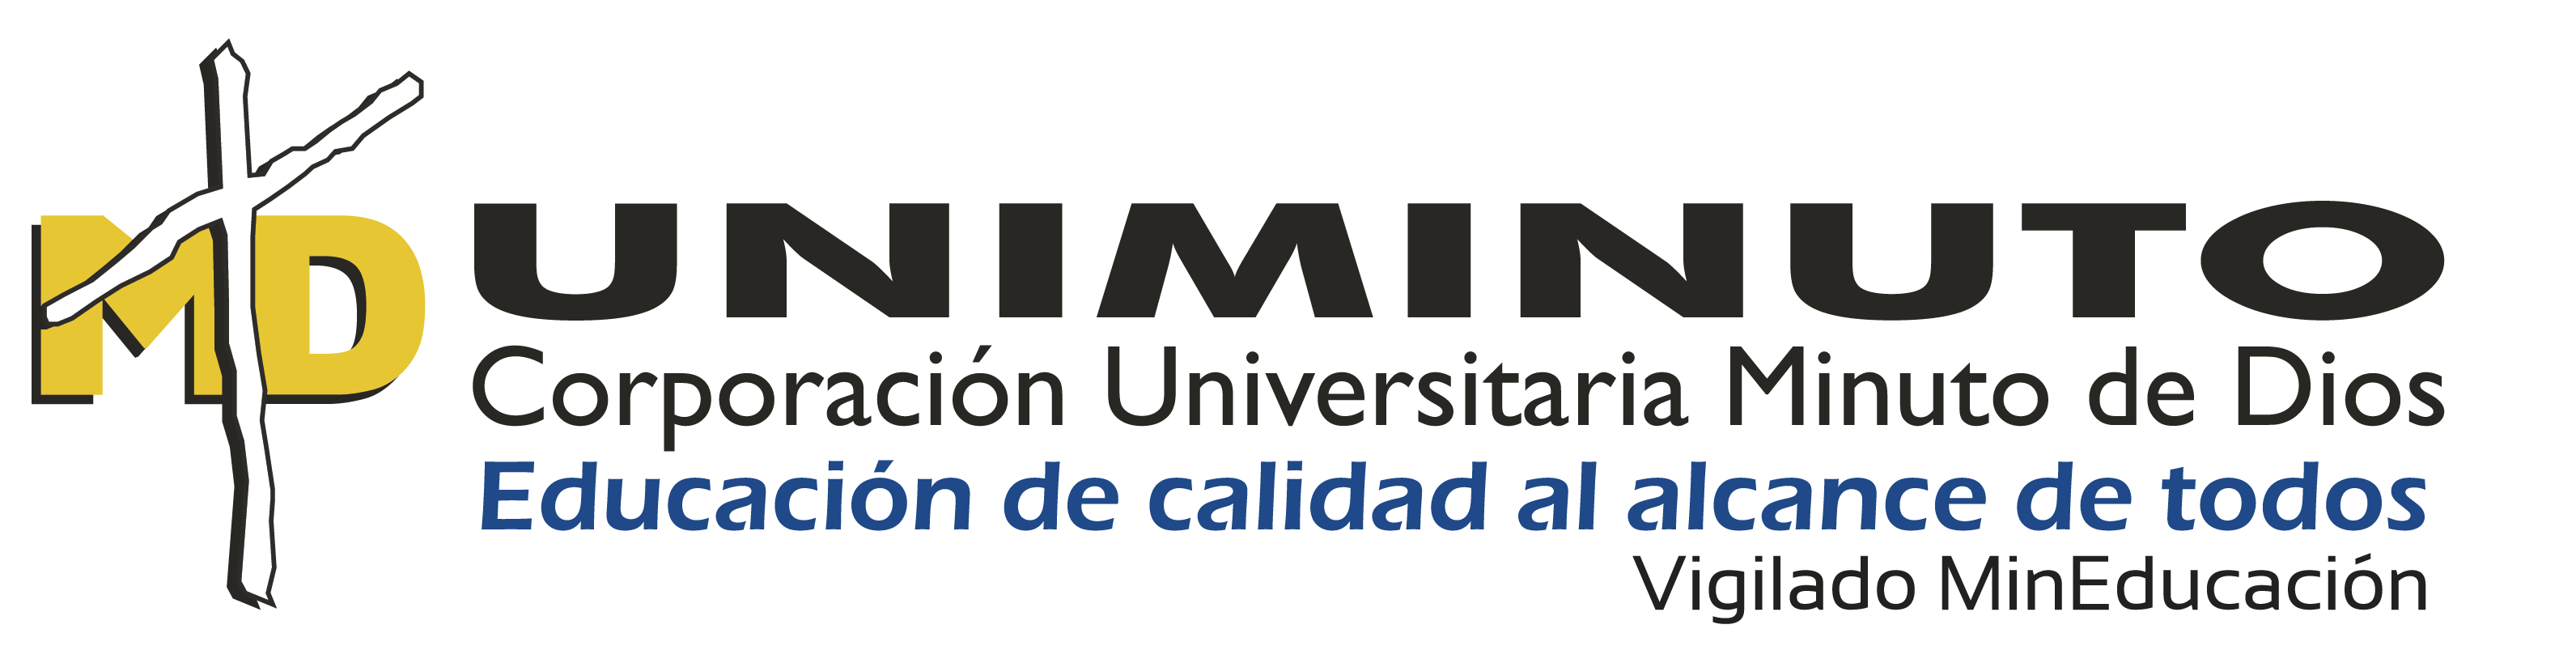 Uniminuto logo